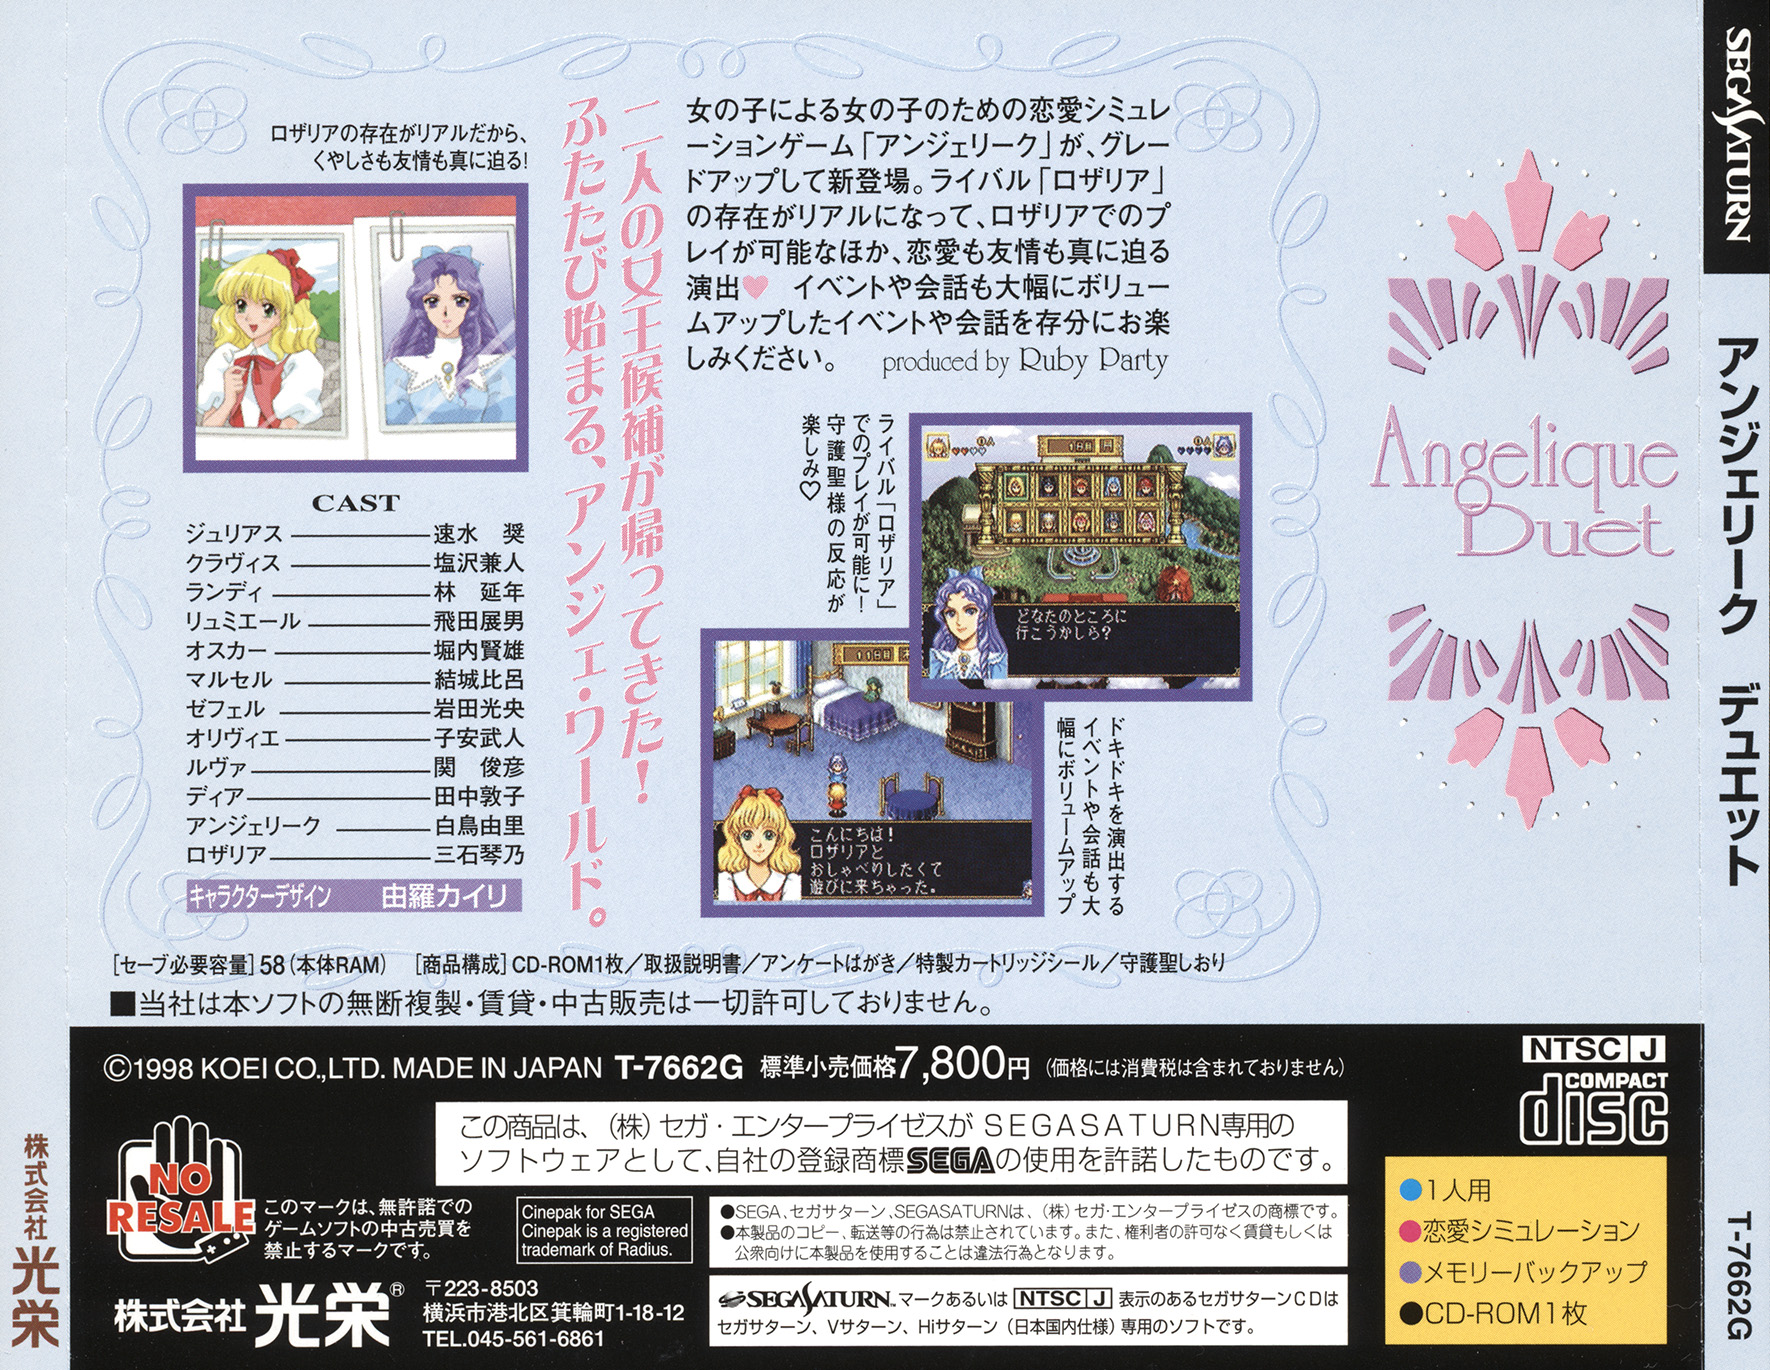 Angelique Duet Details Launchbox Games Database